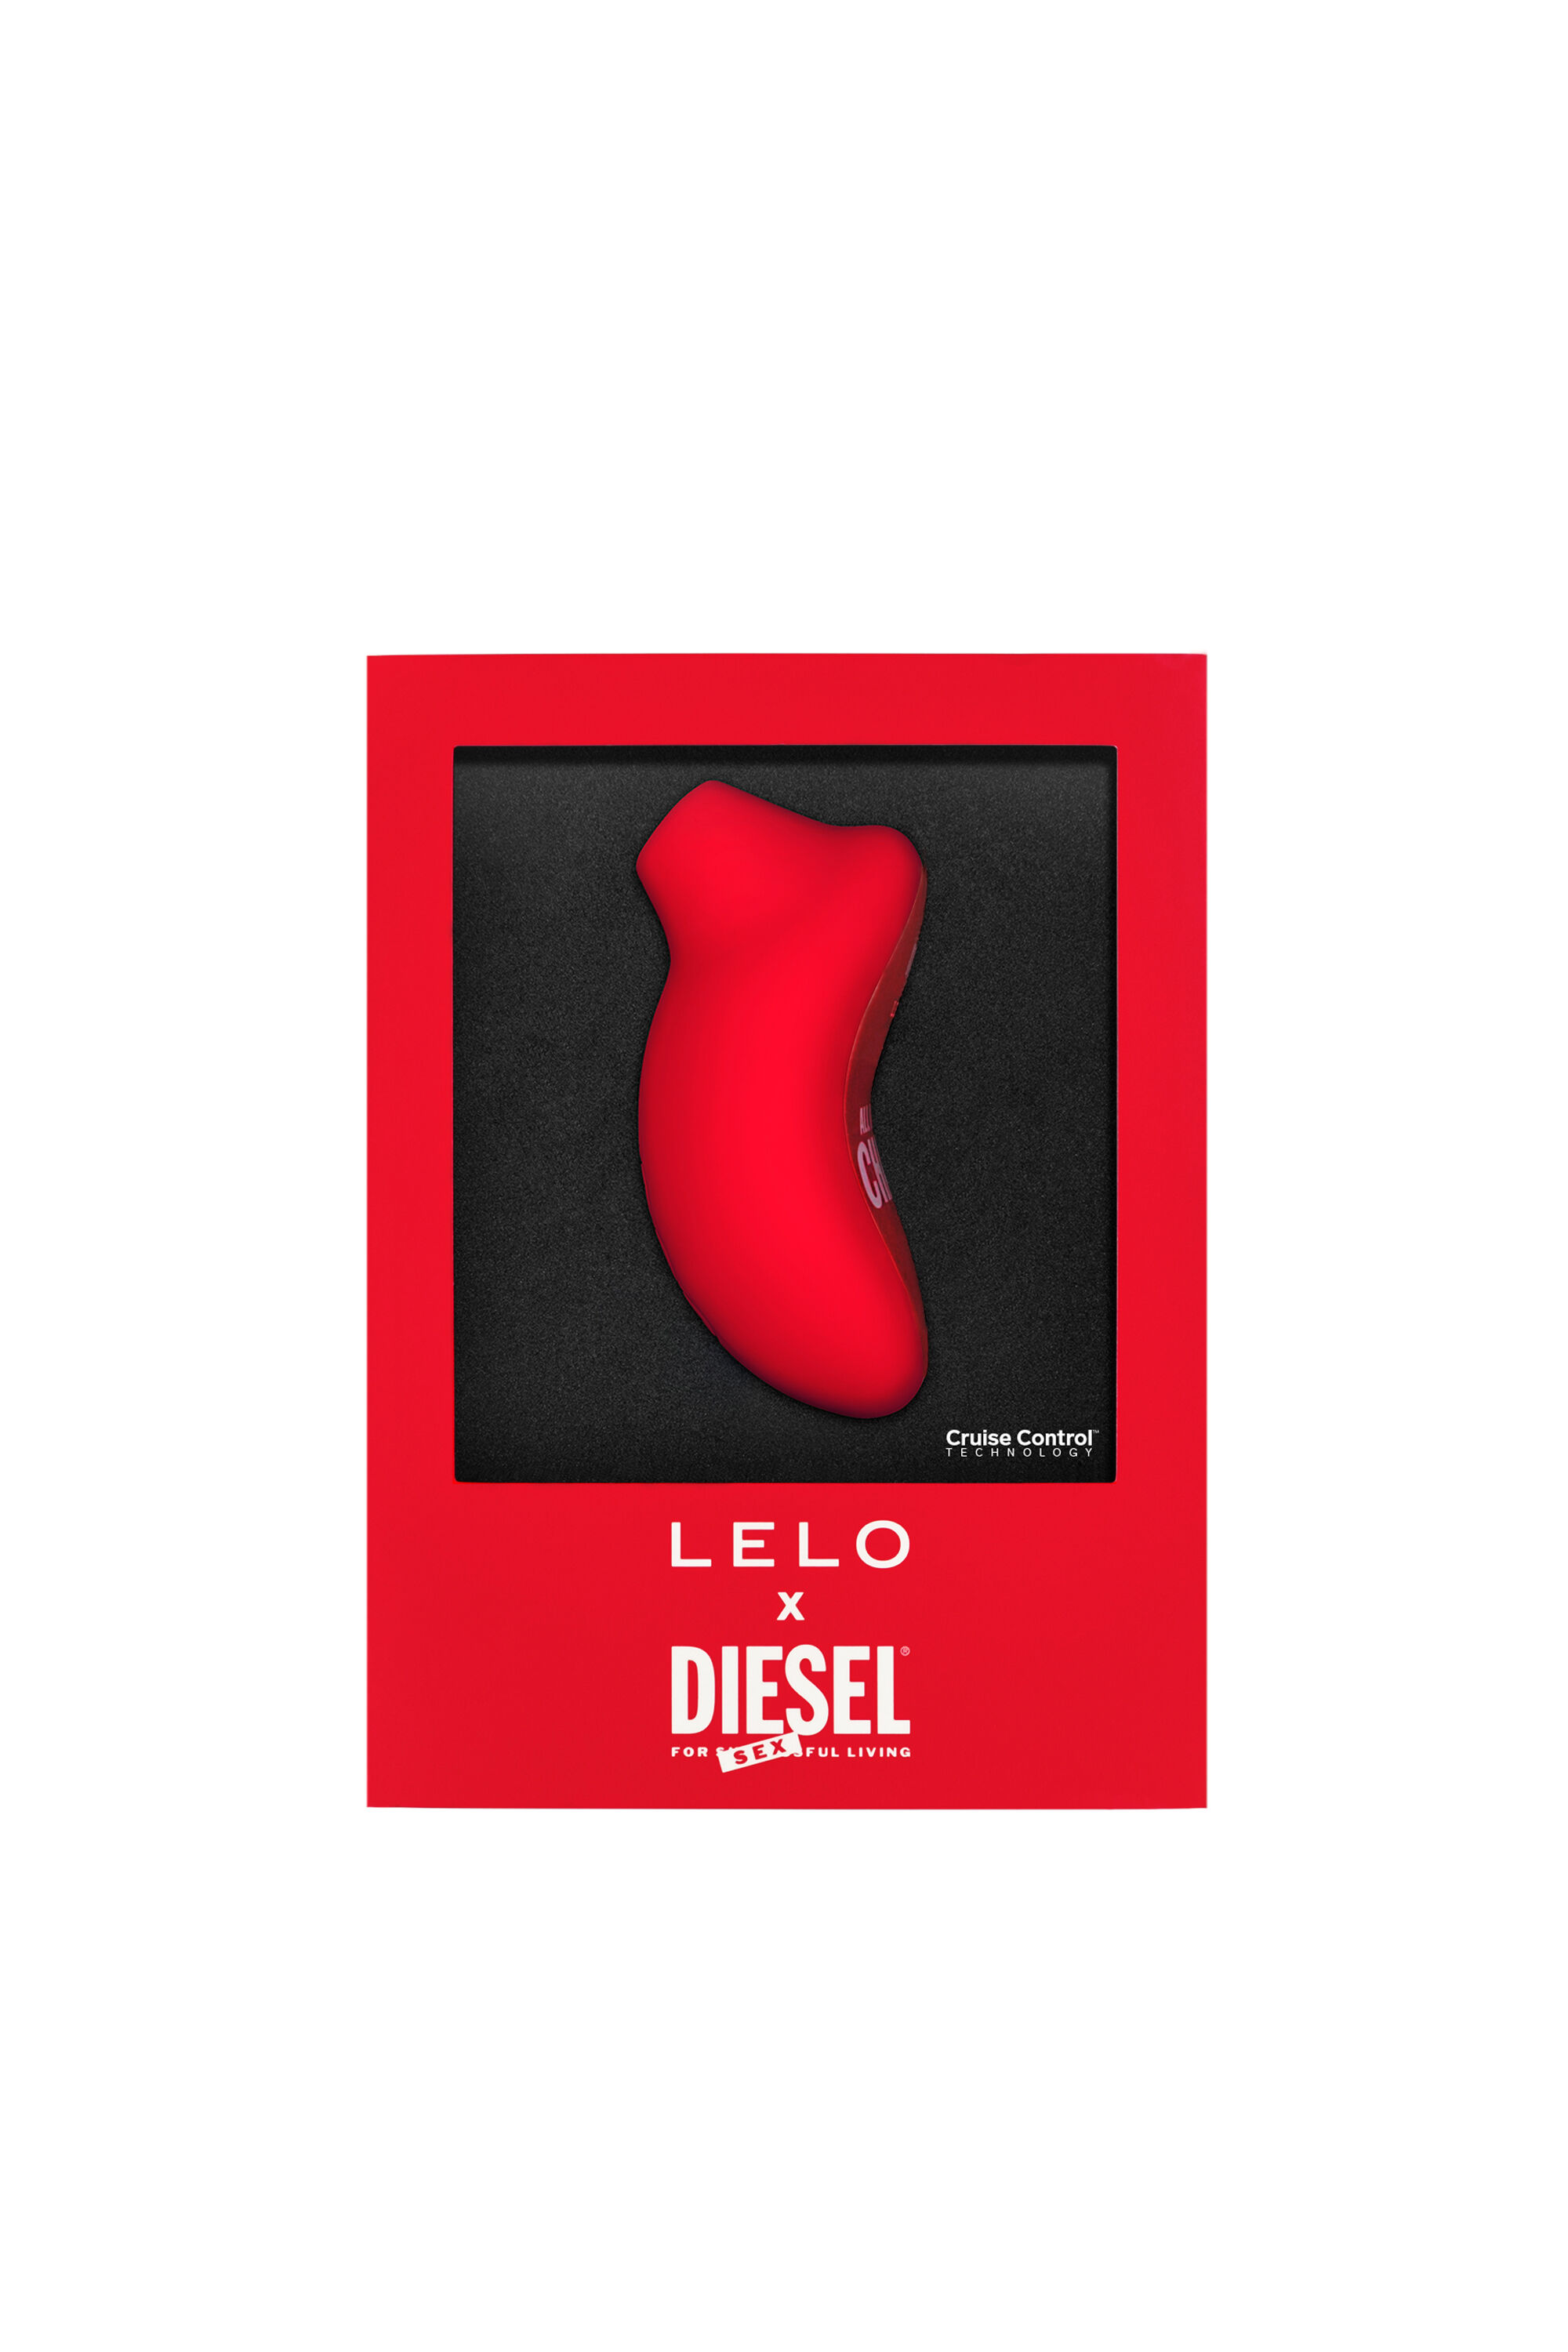 Diesel - 8687 SONA CRUISE X DIESEL, レッド - Image 1